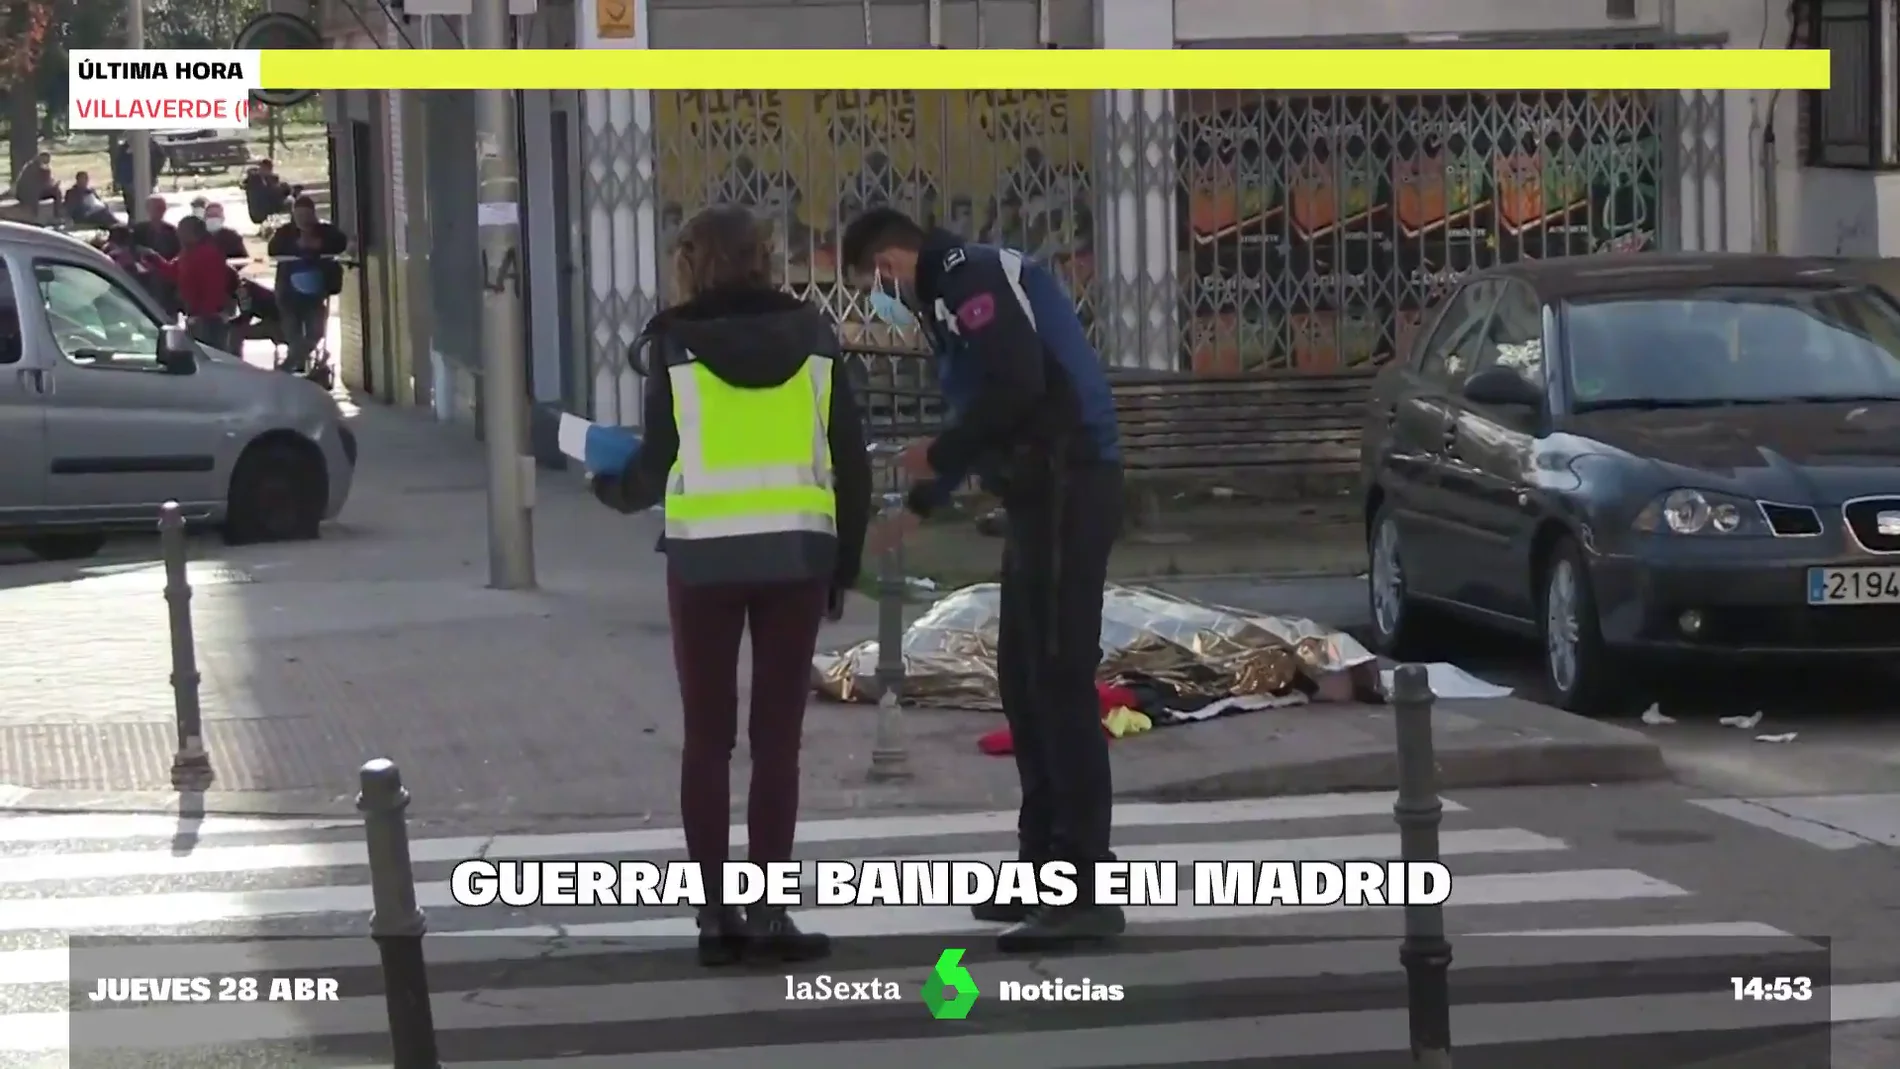 La guerra de bandas en Madrid continúa: matan a un joven de 18 años a puñaladas